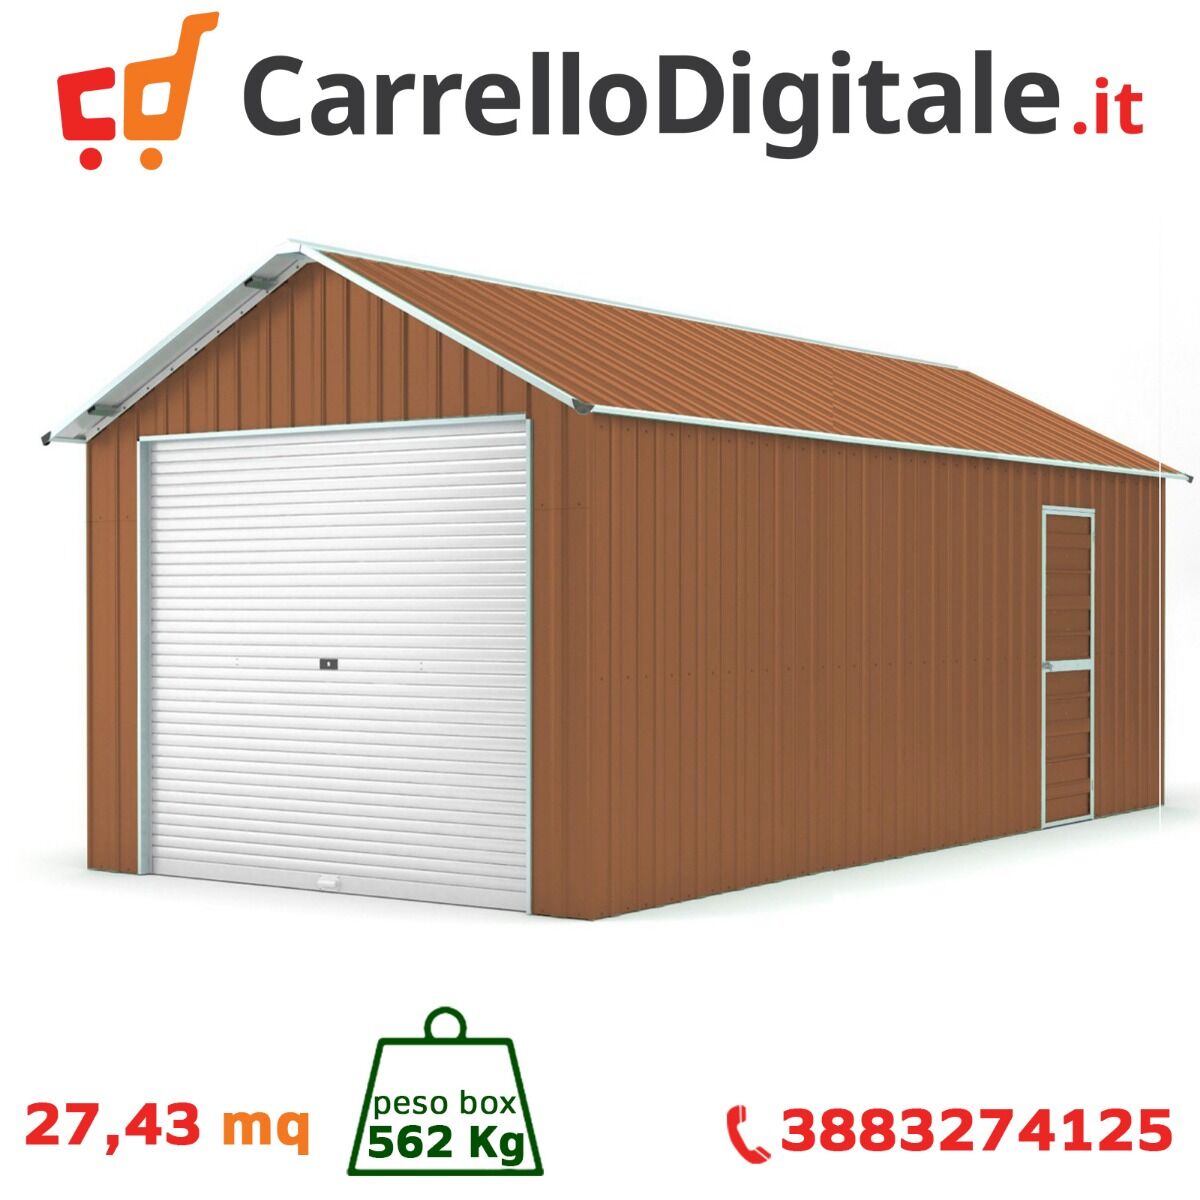 Box in Acciaio Zincato Casetta da Giardino in Lamiera Box Auto 3.60 x 7.62 m x h 3.15 m - 562 KG - 27.43 metri quadri - LEGNO